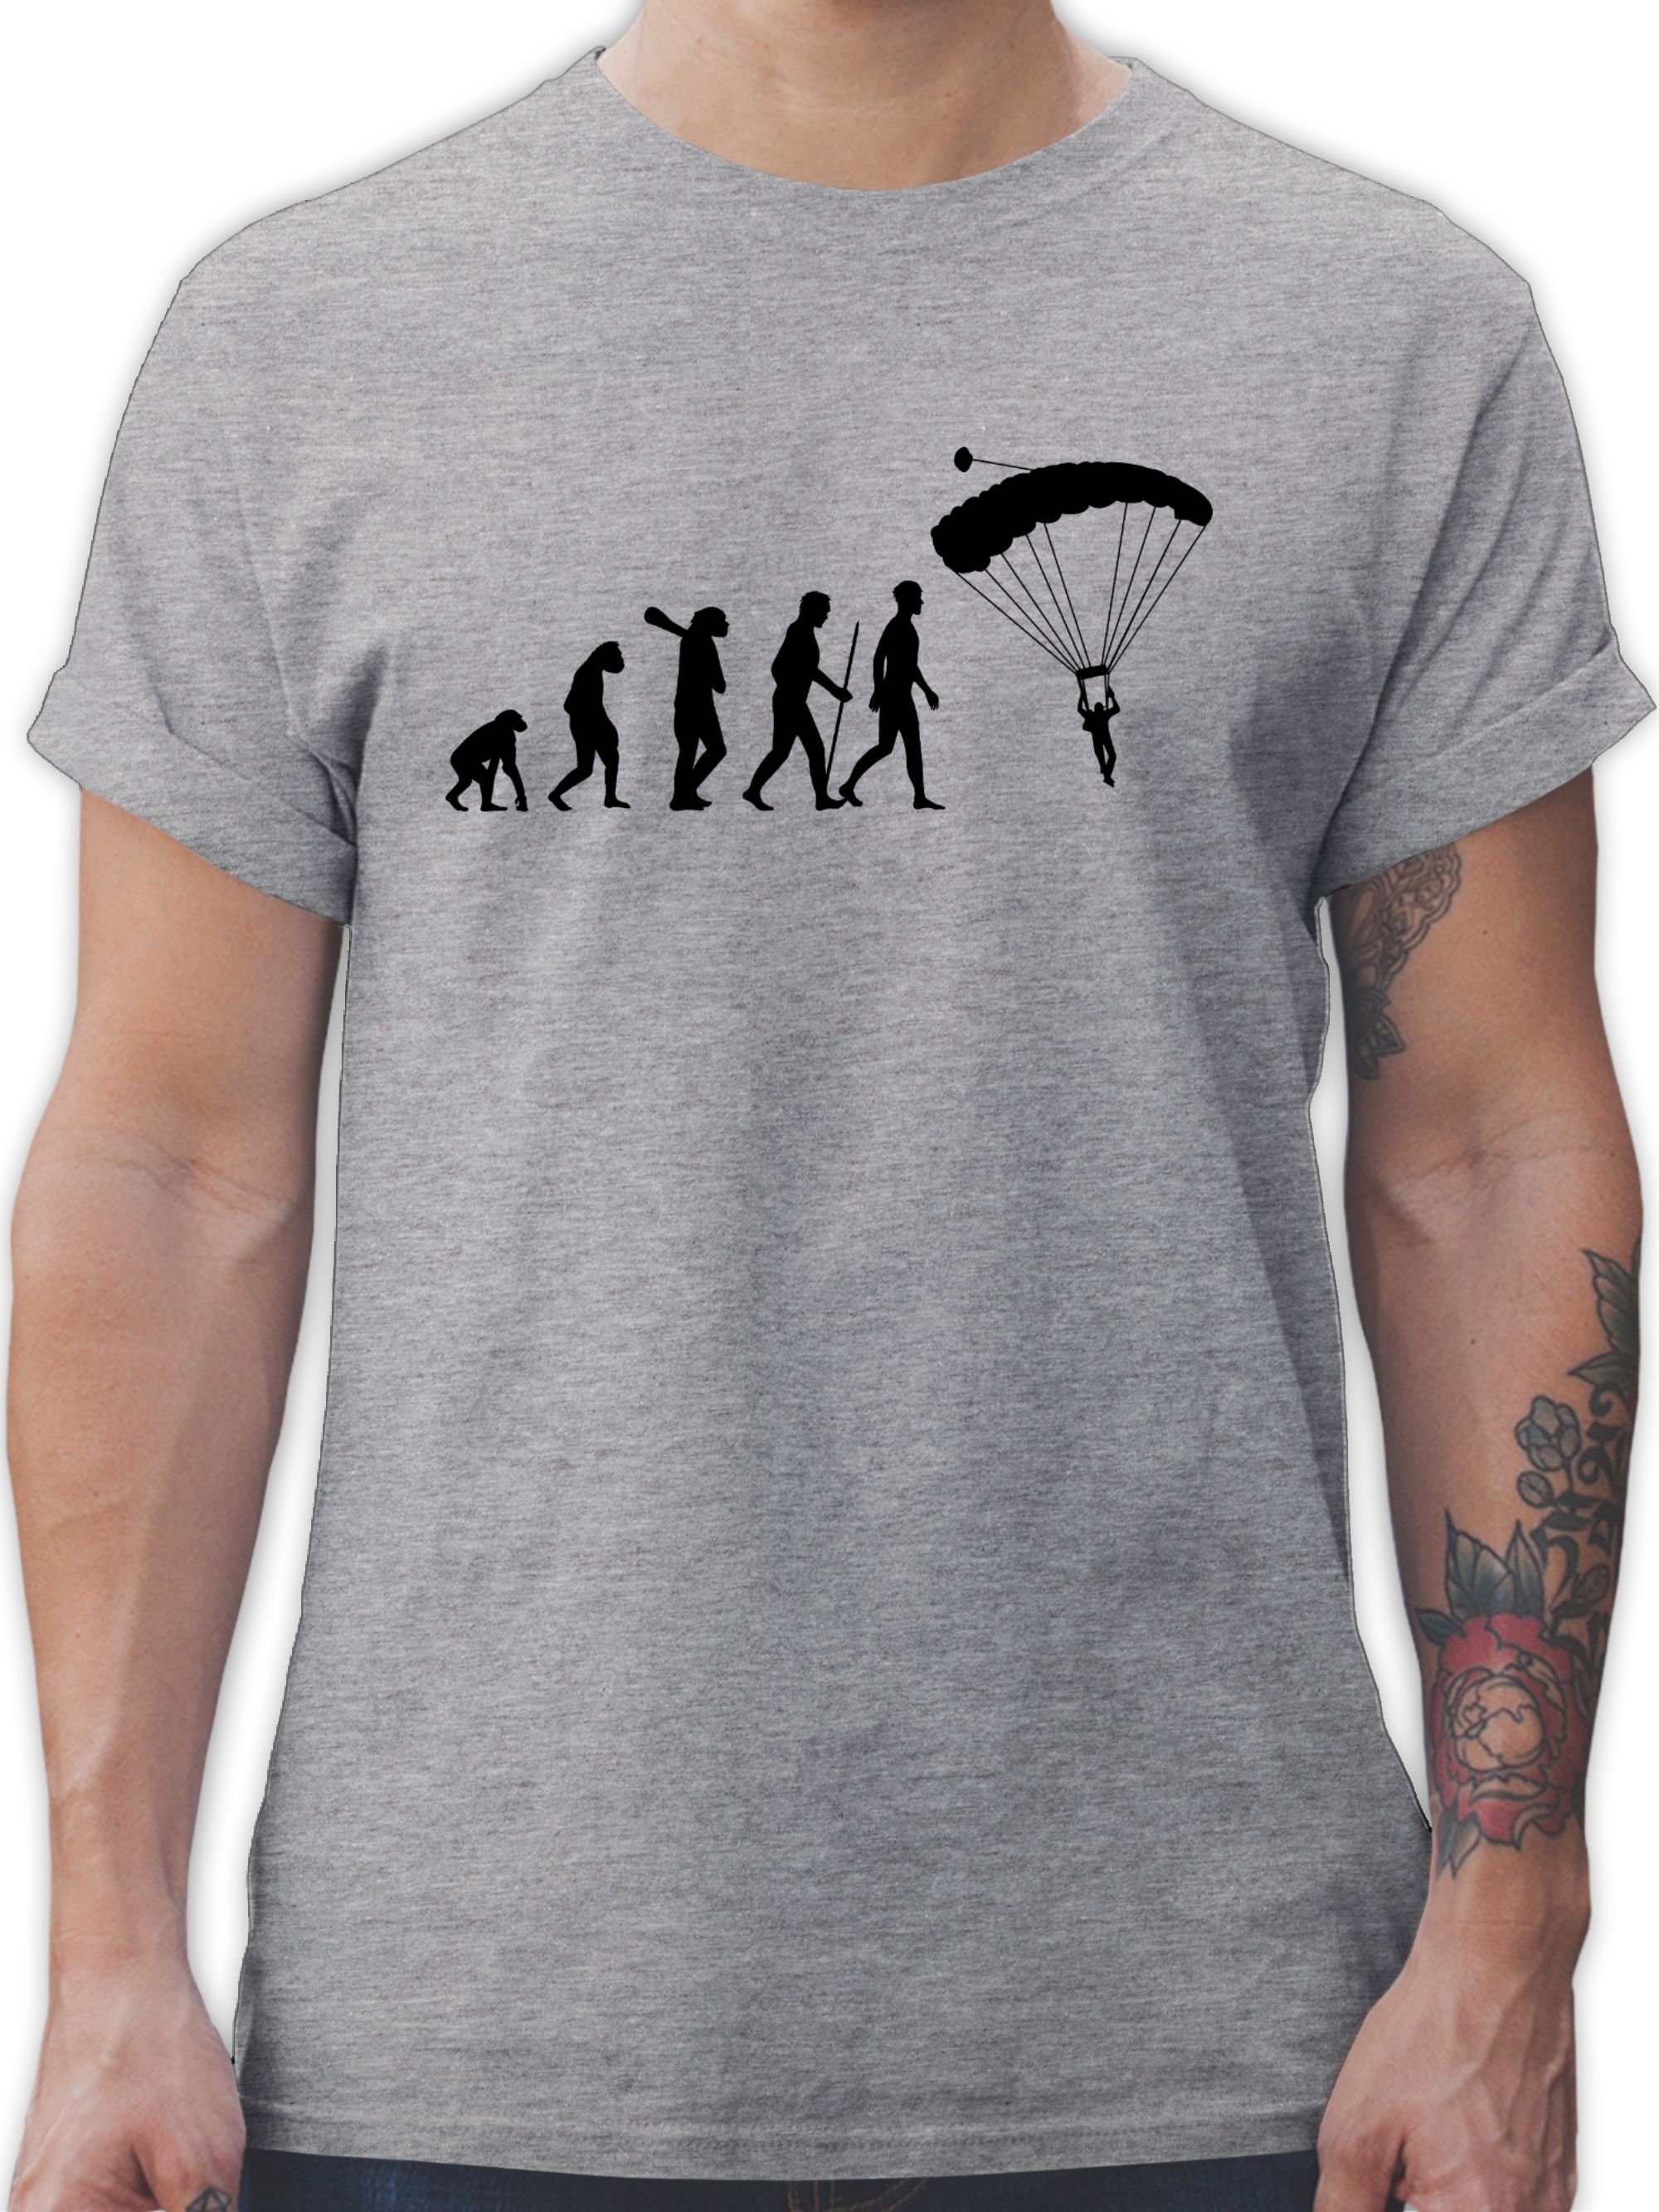 Evolution Fallschirmspringen T-Shirt Evolution Shirtracer Outfit Grau 2 meliert